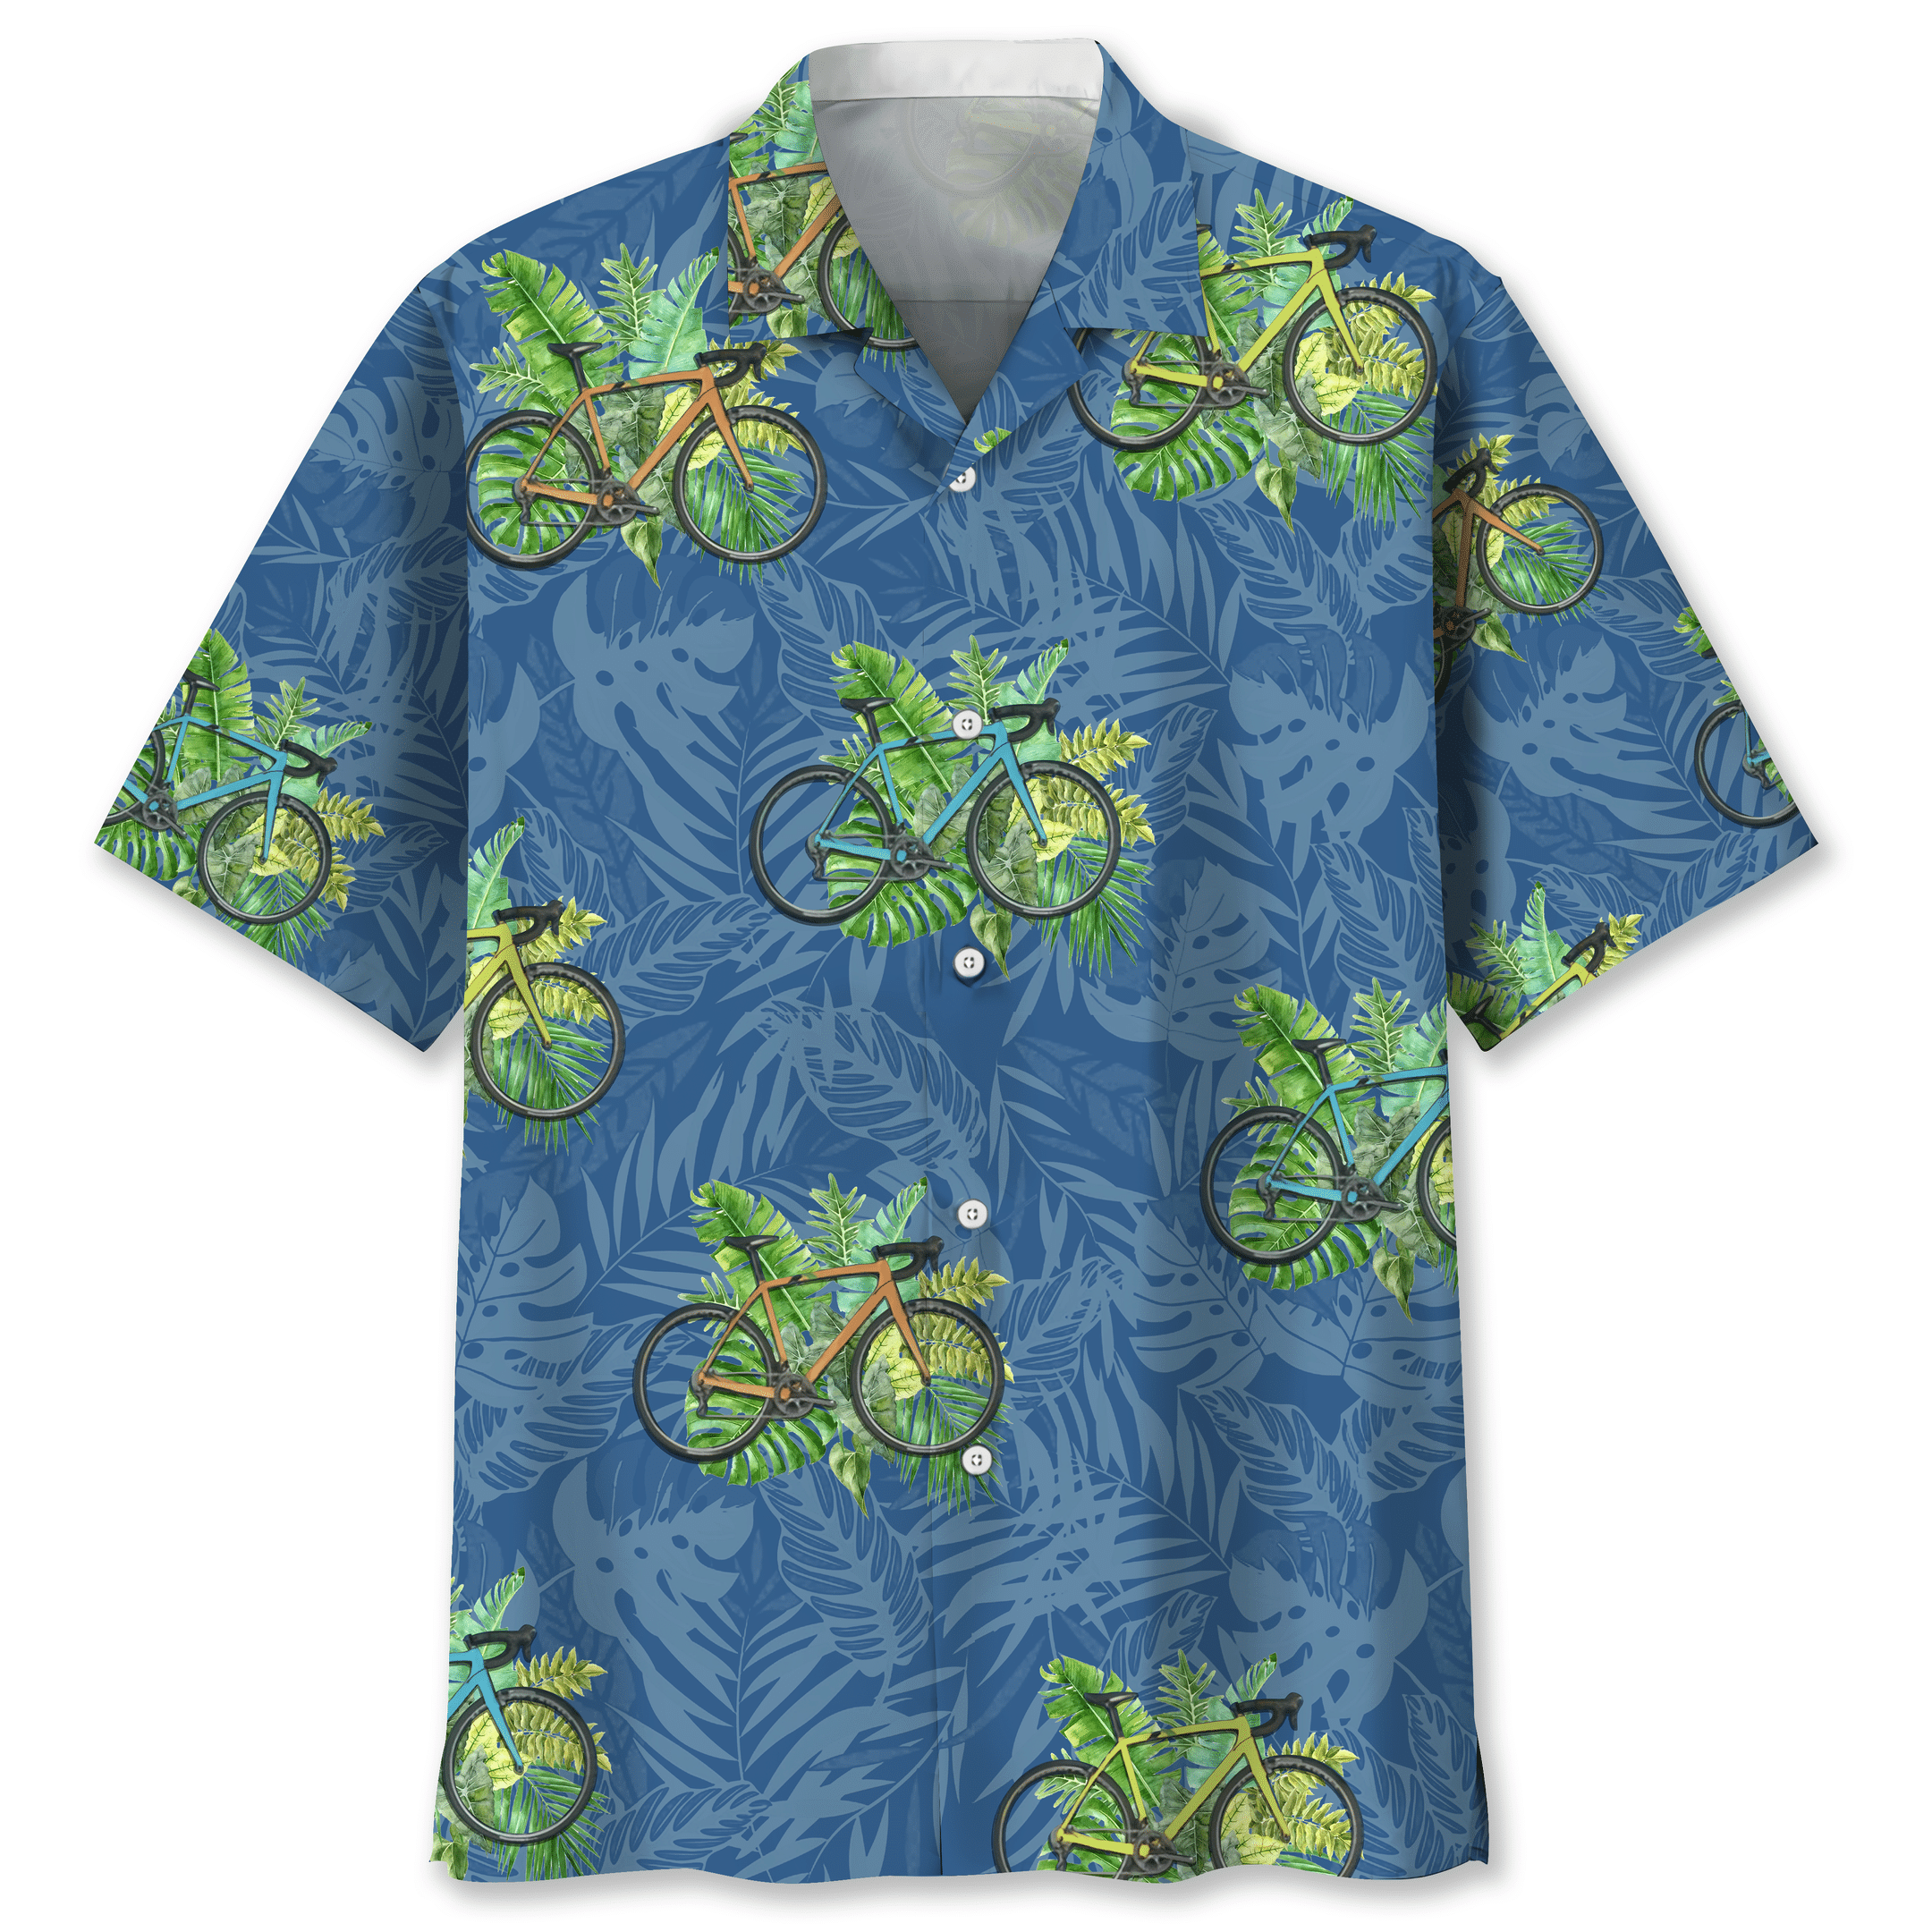 NEW Cycling tropical Nature Hawaiian Shirt